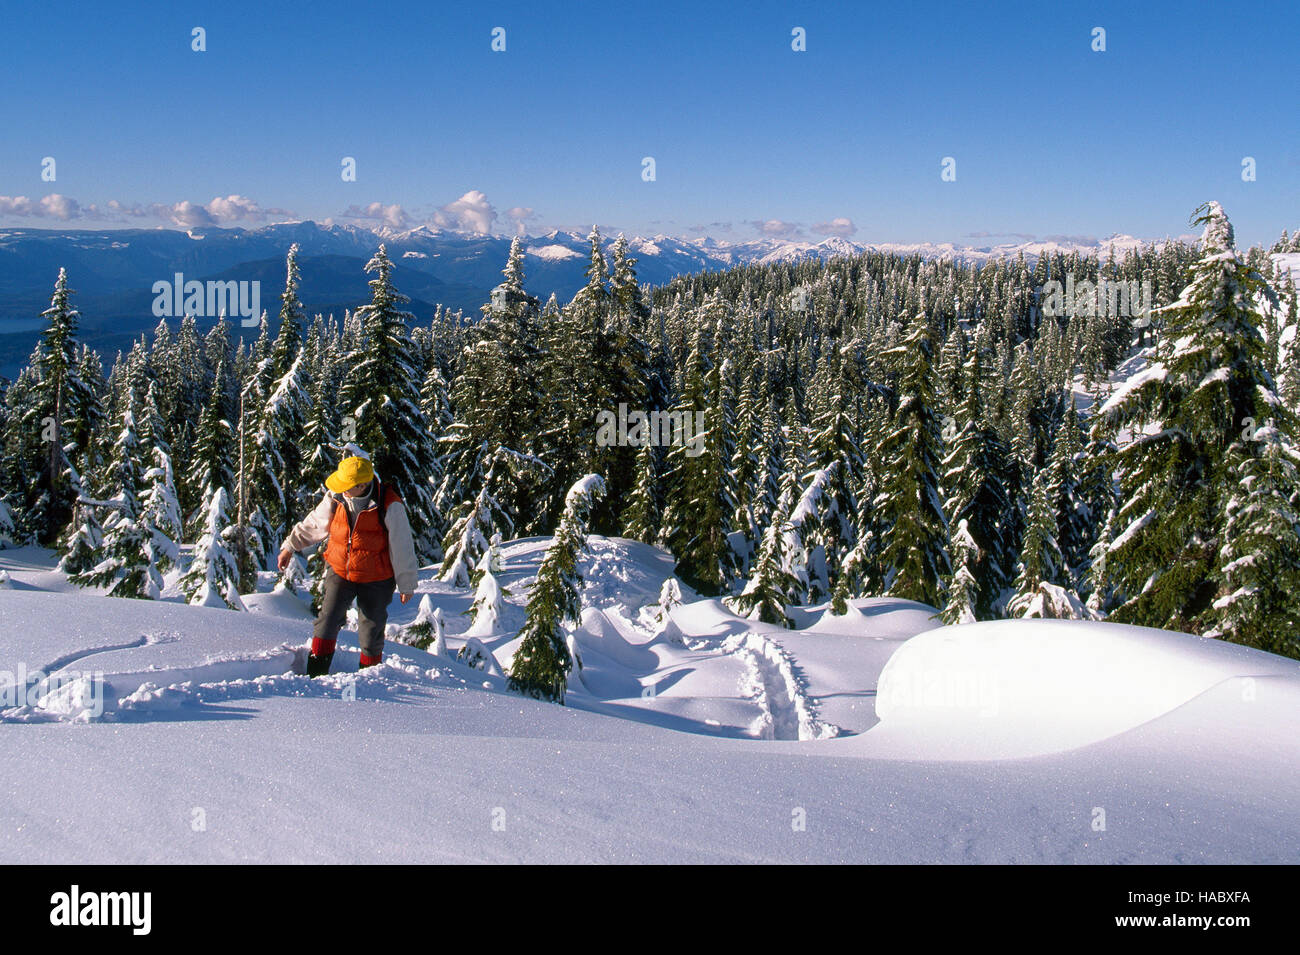 Zypresse-provinzieller Park, West Vancouver, BC, Britisch-Kolumbien, Kanada - Wanderer Wandern im Schnee am Black Mountain, Winter Stockfoto